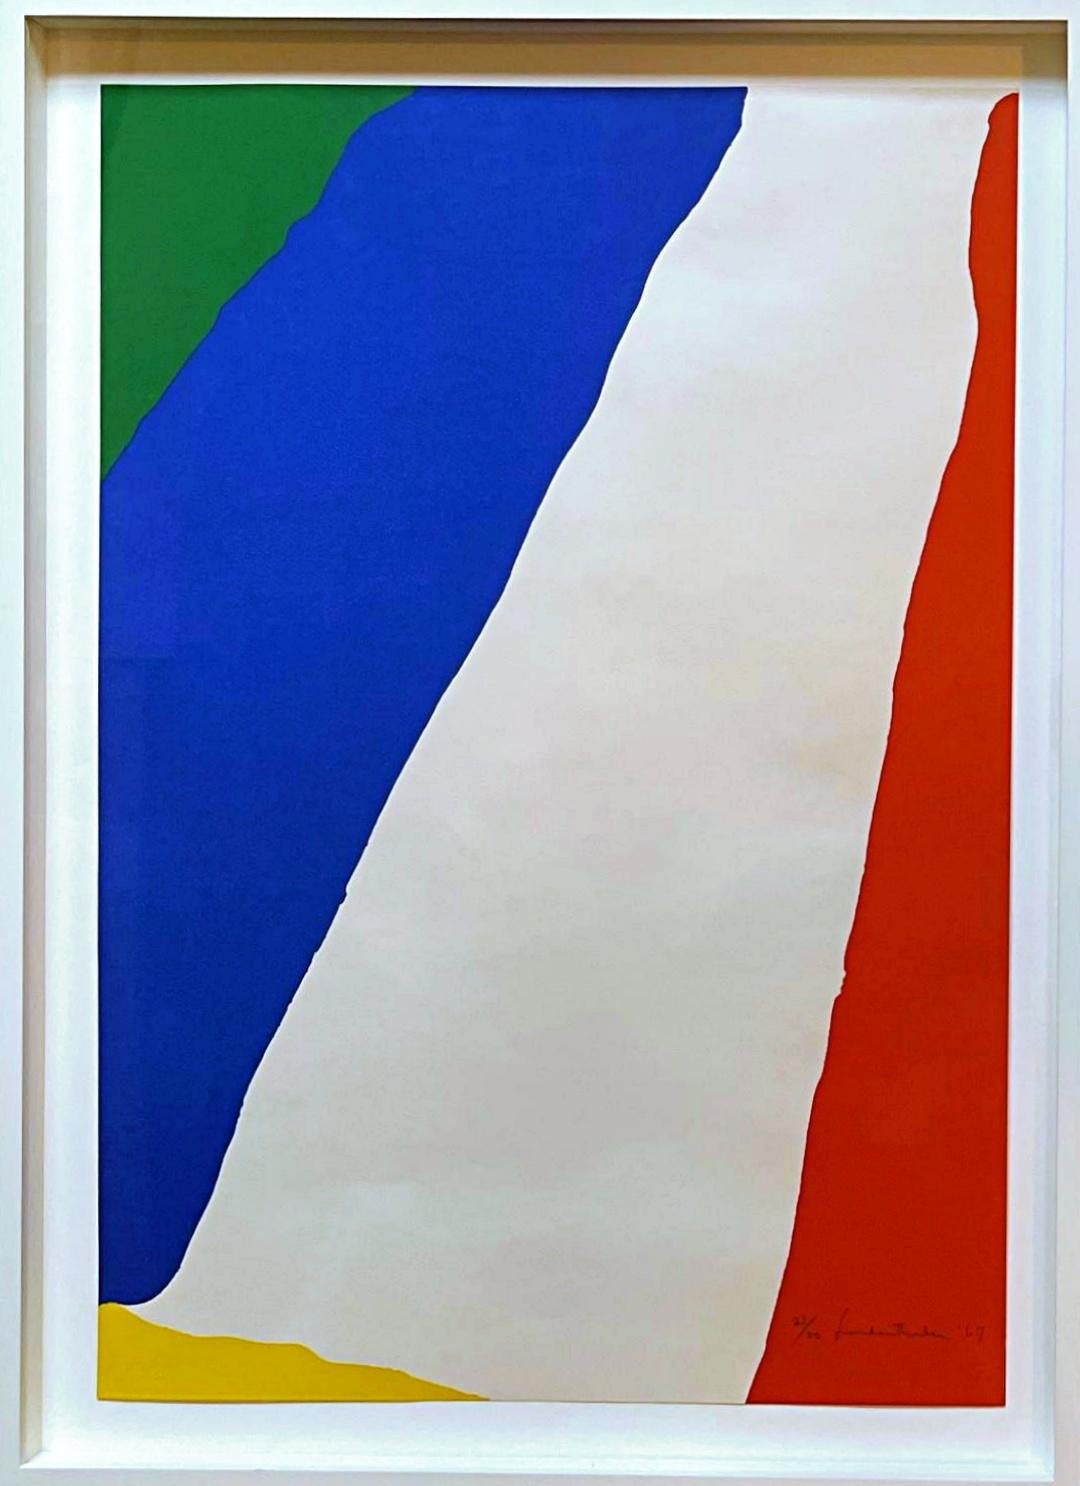 Helen Frankenthaler Abstract Print - Untitled Abstract Expressionist silkscreen (Harrison 11)